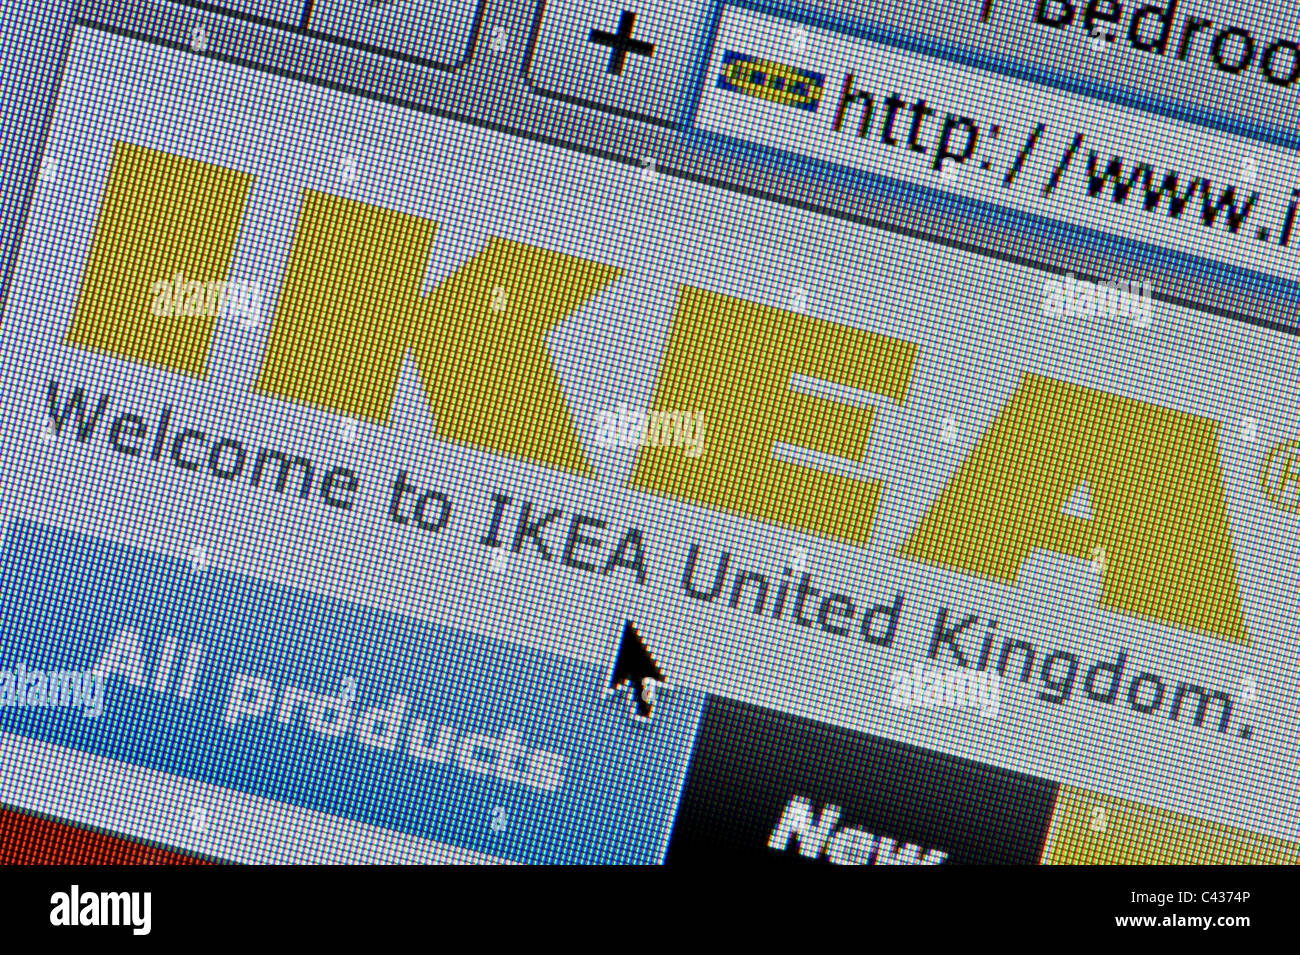 Gros plan du logo Ikea comme vu sur son site web. (Usage éditorial uniquement : -Print, télévision, e-book et le comité éditorial du site). Banque D'Images